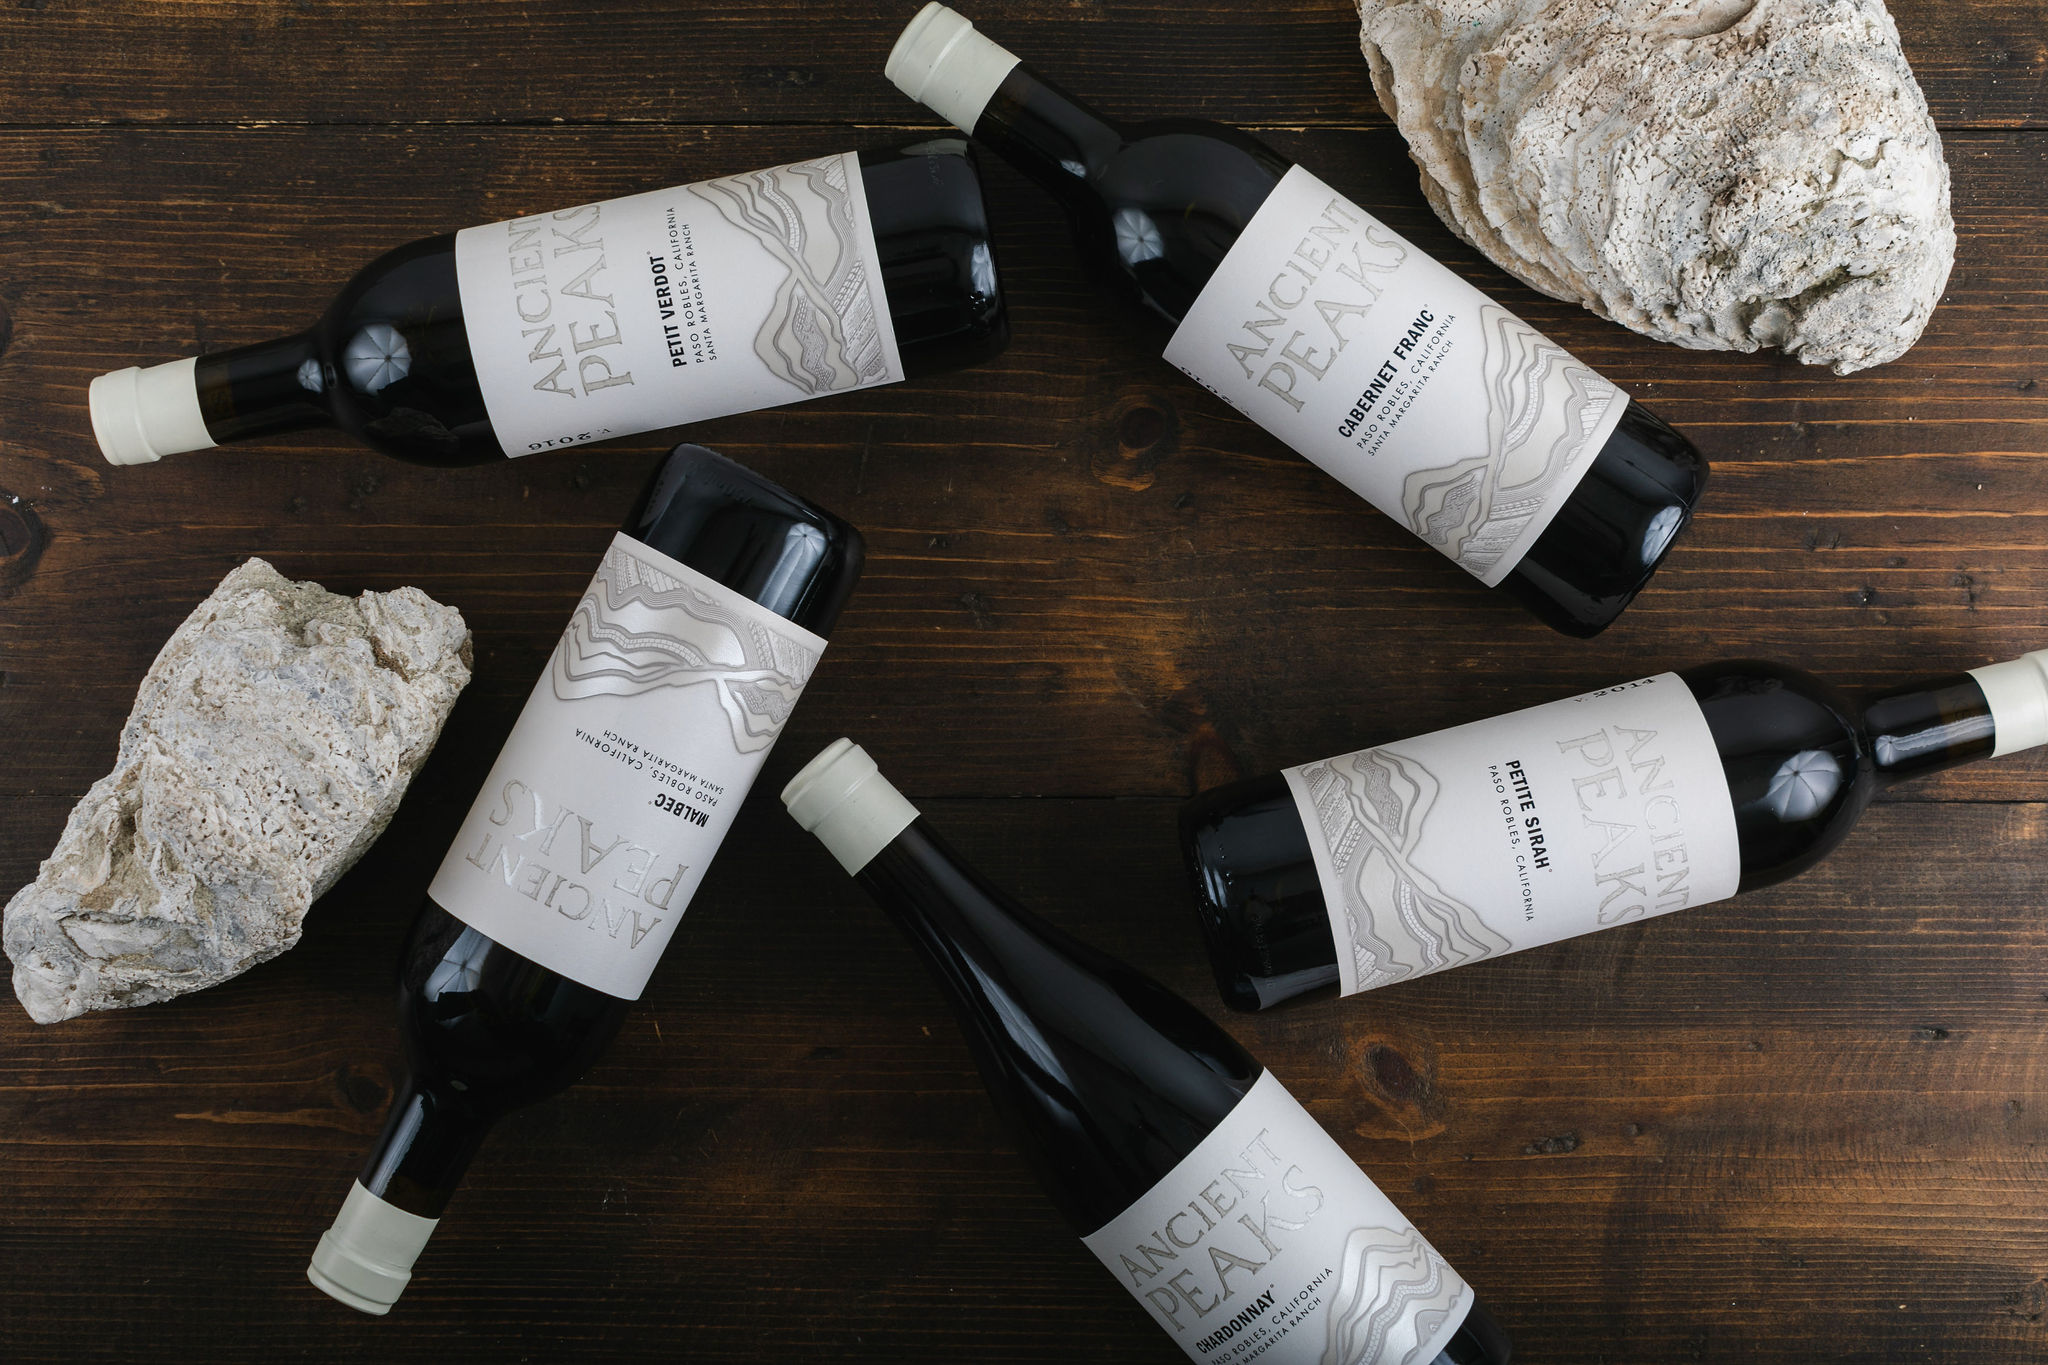 ancient peaks winery wine bottles 